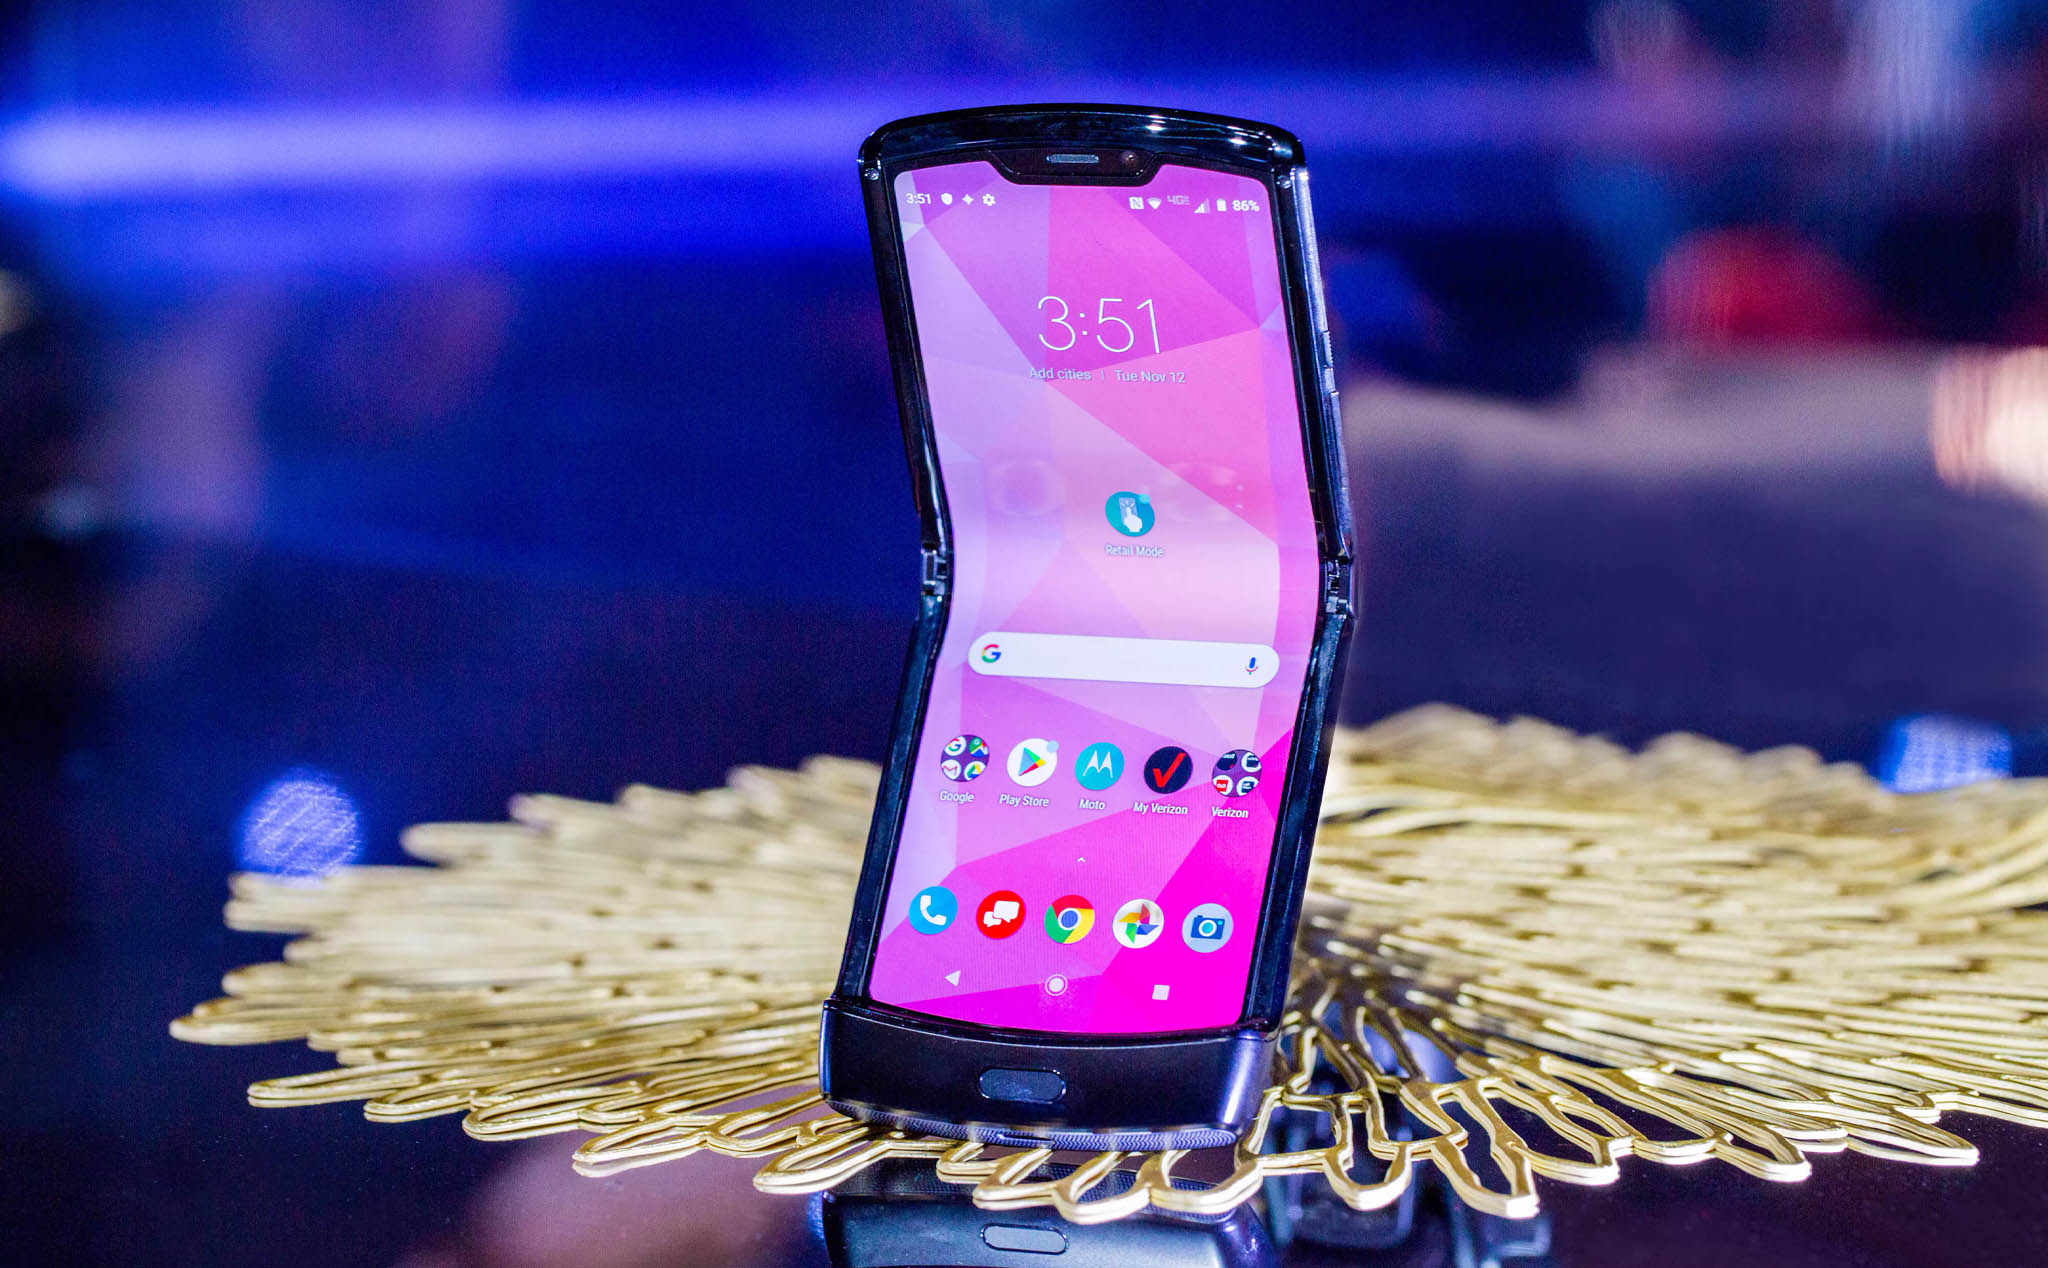 Motorola nghĩ sẽ có người mua điện thoại màn dẻo, cấu hình tầm trung giá 1.500 USD?